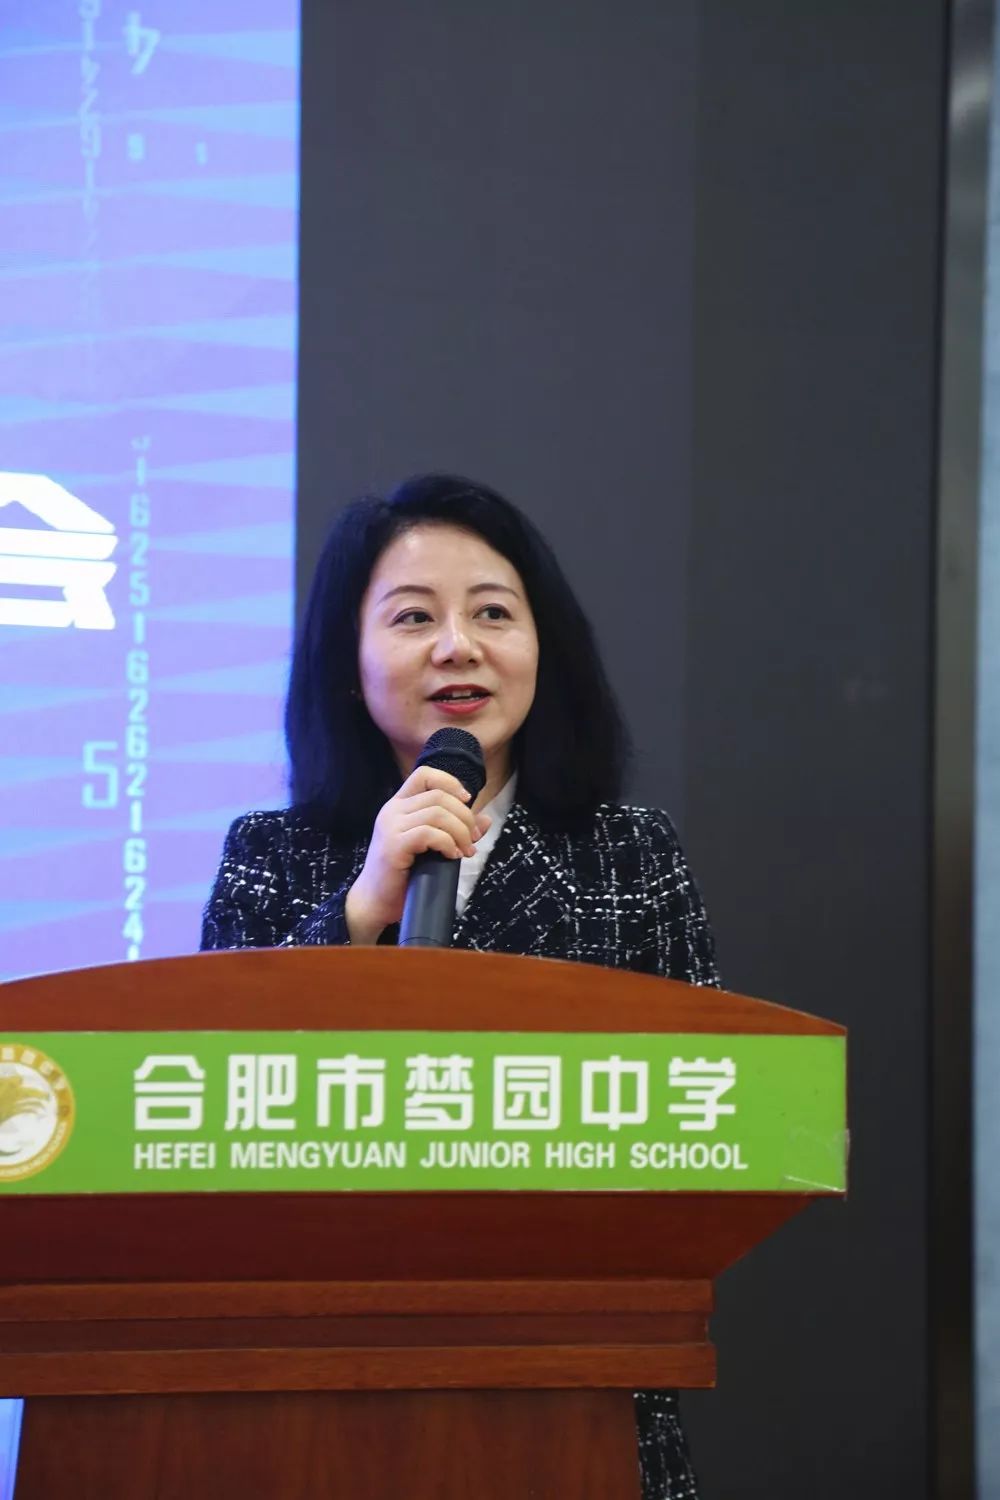 合肥市教育局副局长陈雪梅作重要讲话陈雪梅指出,面对新时代教育发展